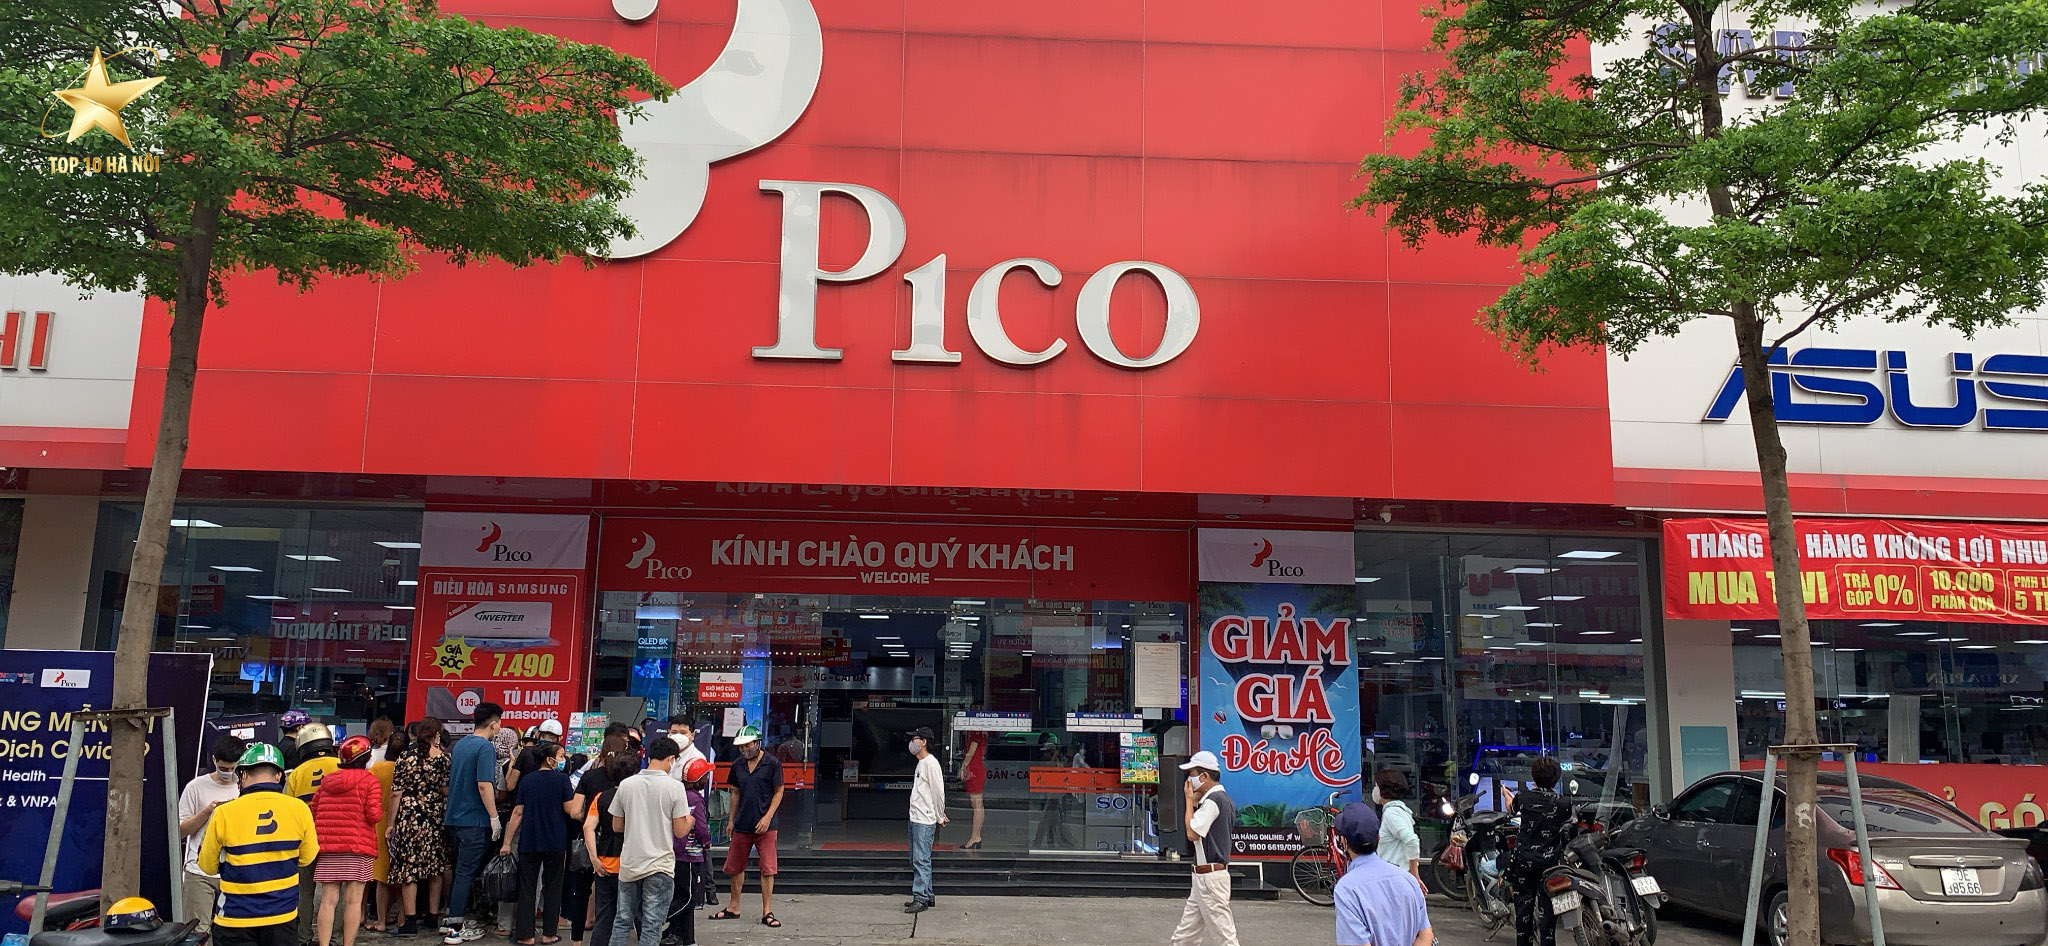 siêu thị điện máy Pico